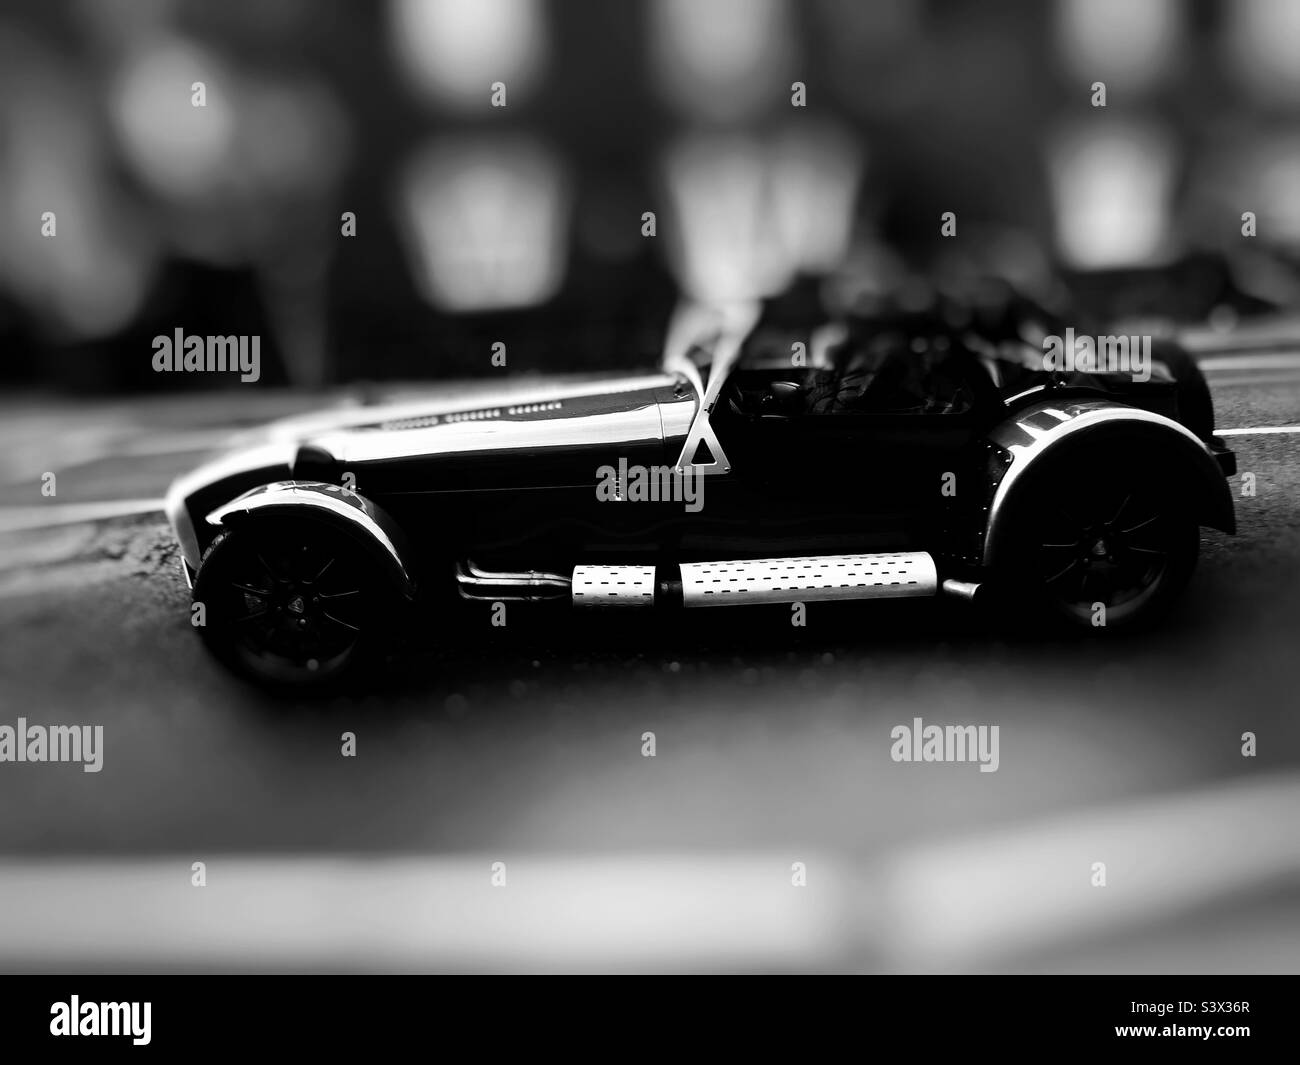 Nero noire immagine di una vettura sportiva vintage con profondità di campo poco profonda Foto Stock